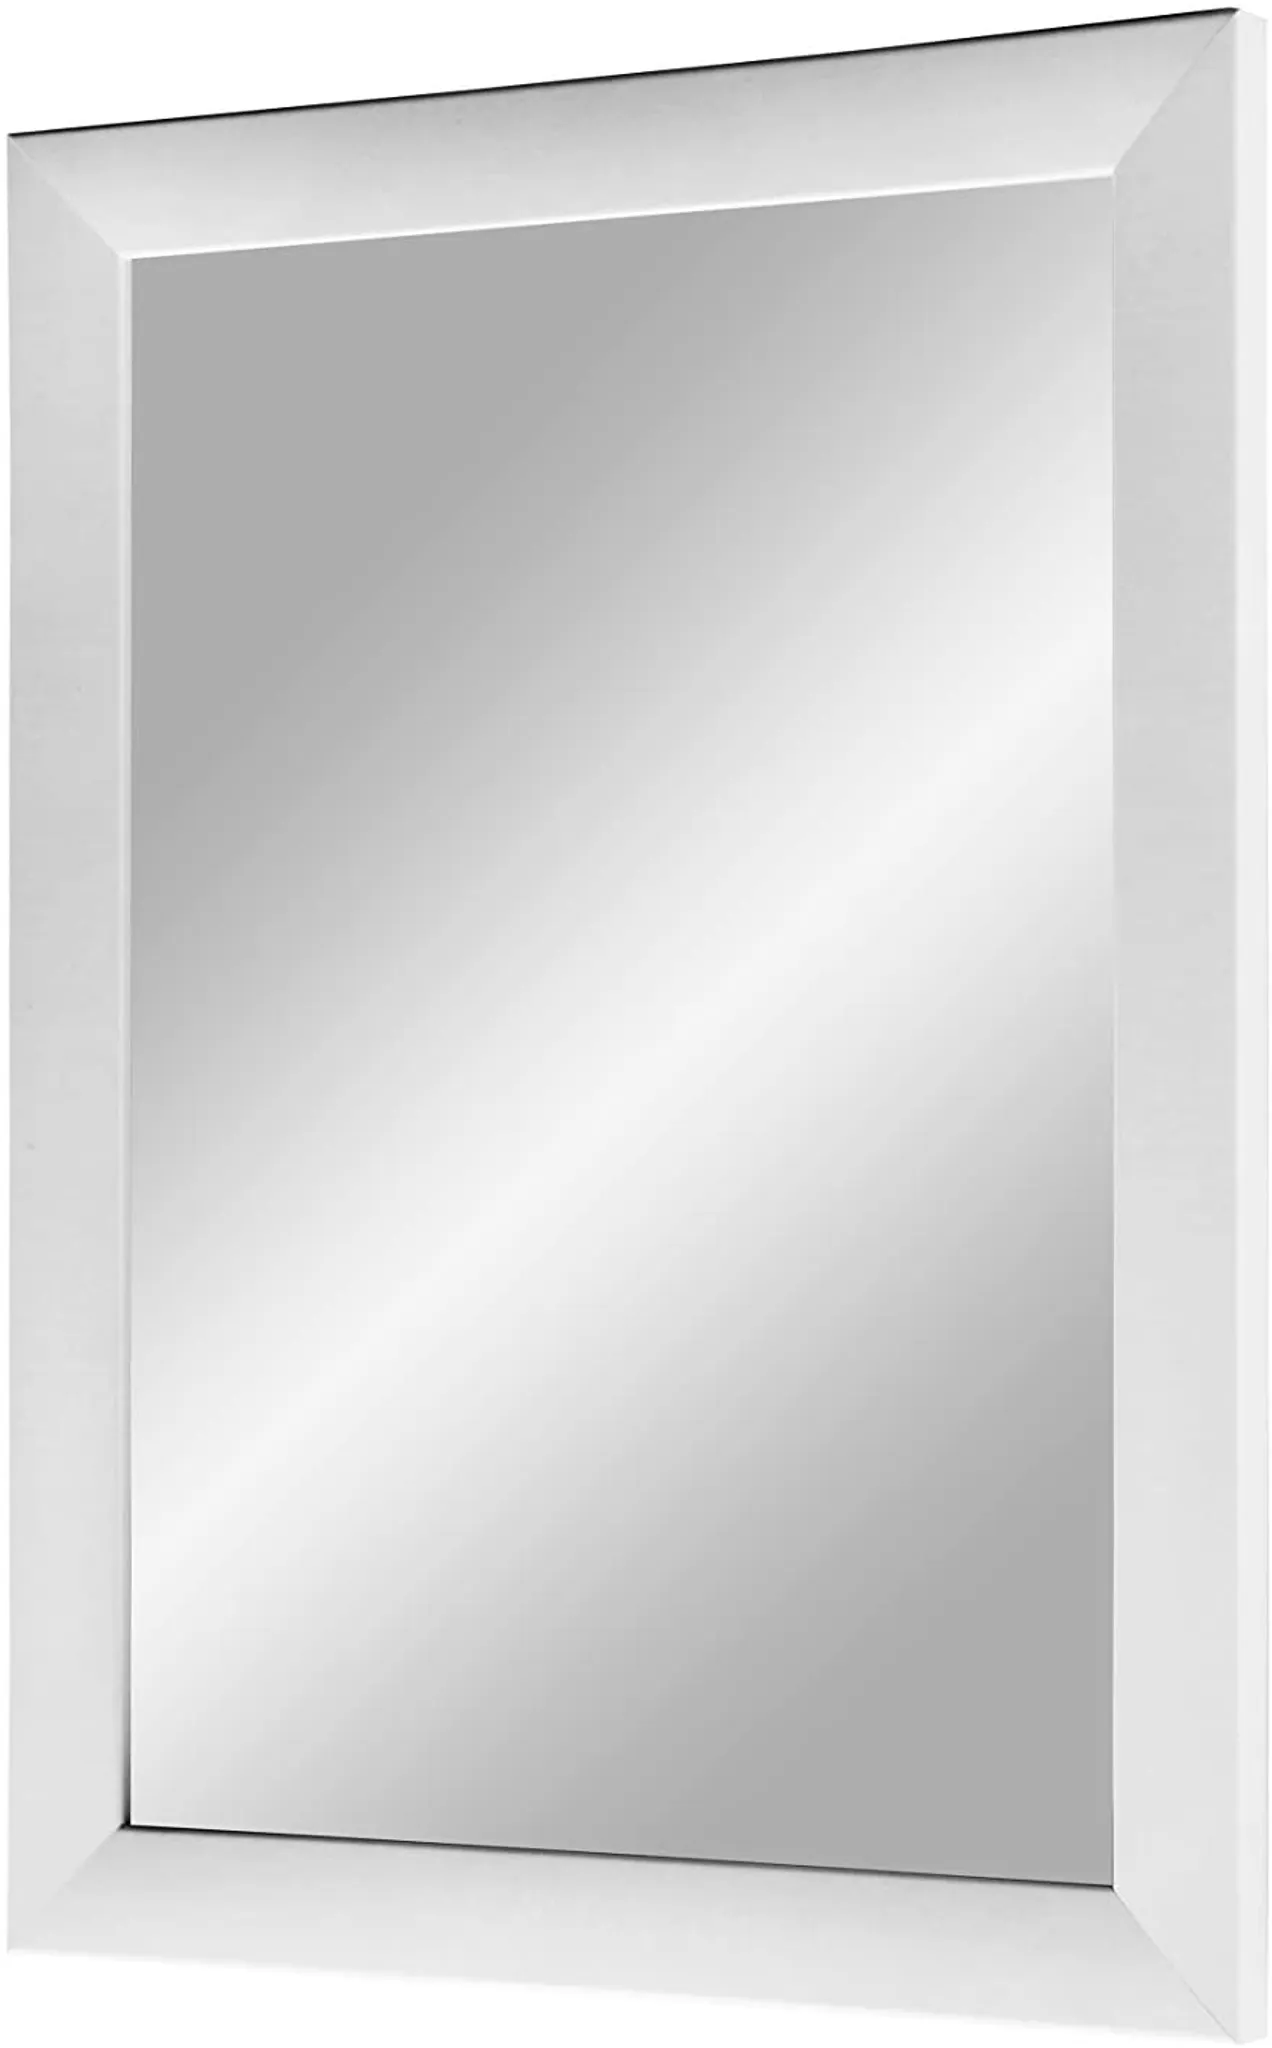 Spiegel - silber Hochglanz - 85x115 cm